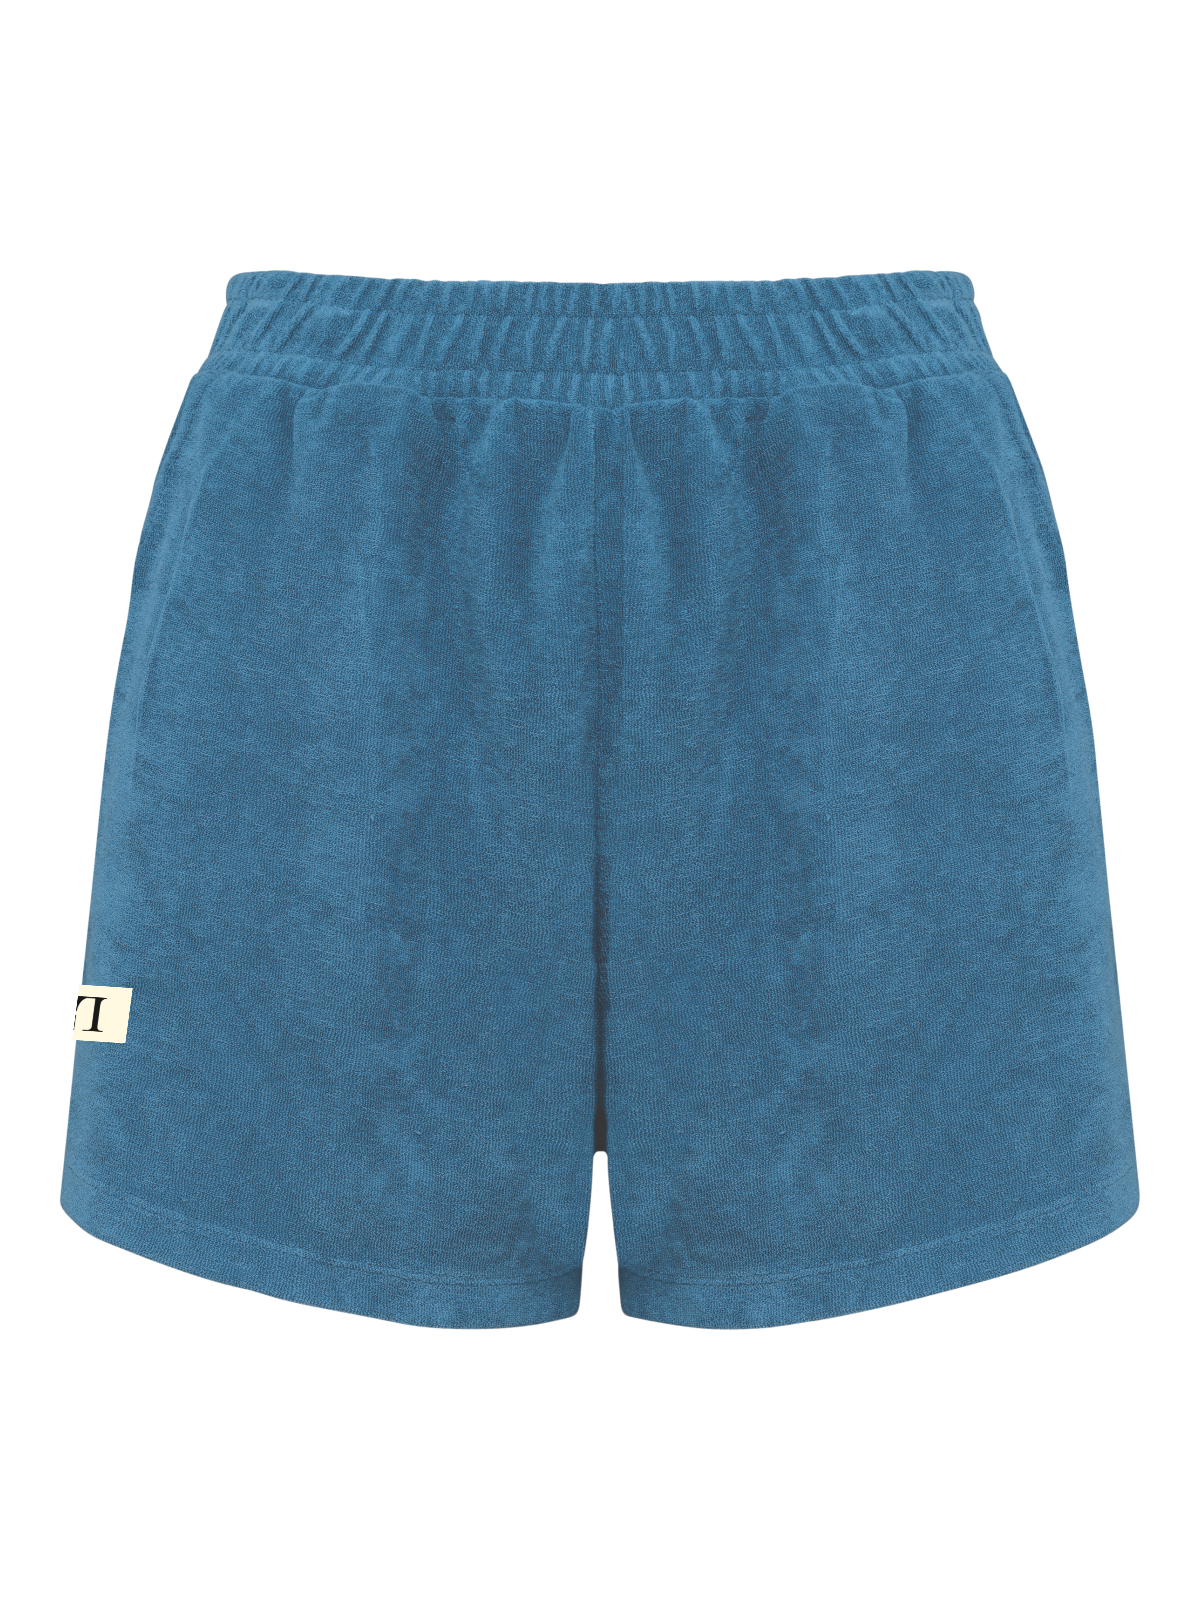 LL Terry Towel Shorts rivera blue